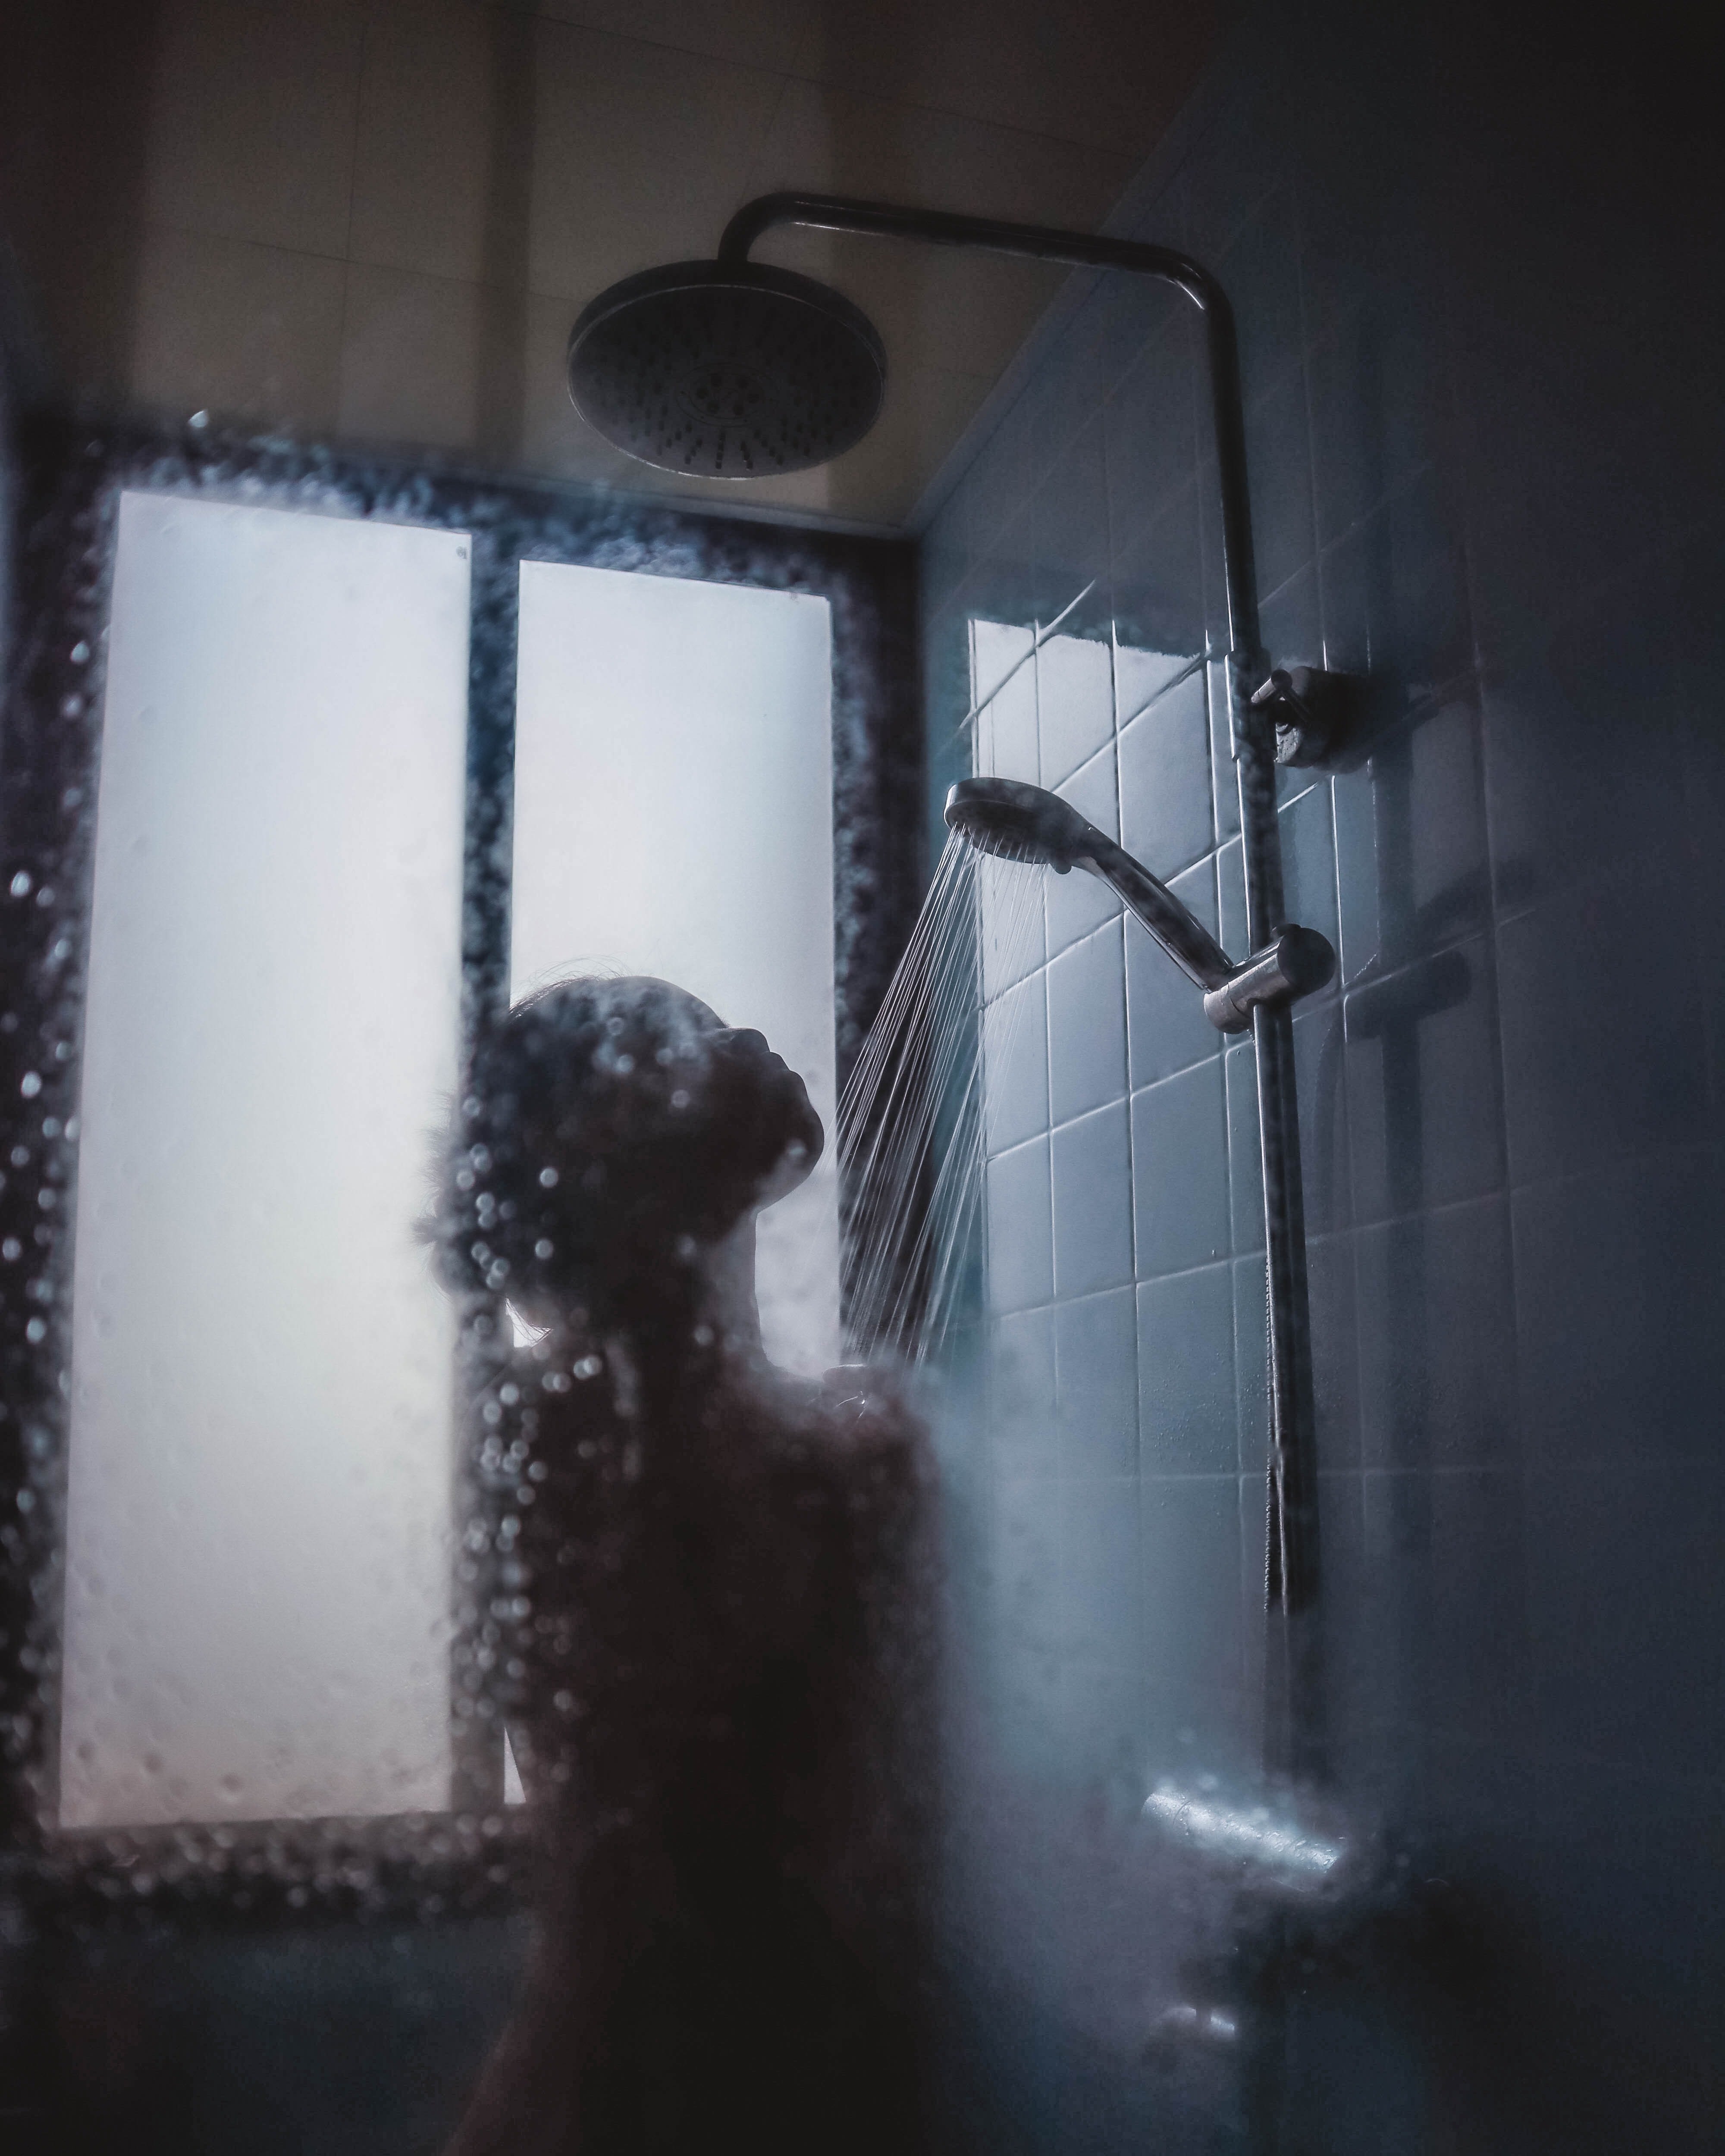 Marie bemerkte, dass jemand in ihrer Abwesenheit die Dusche benutzte. | Quelle: Unsplash